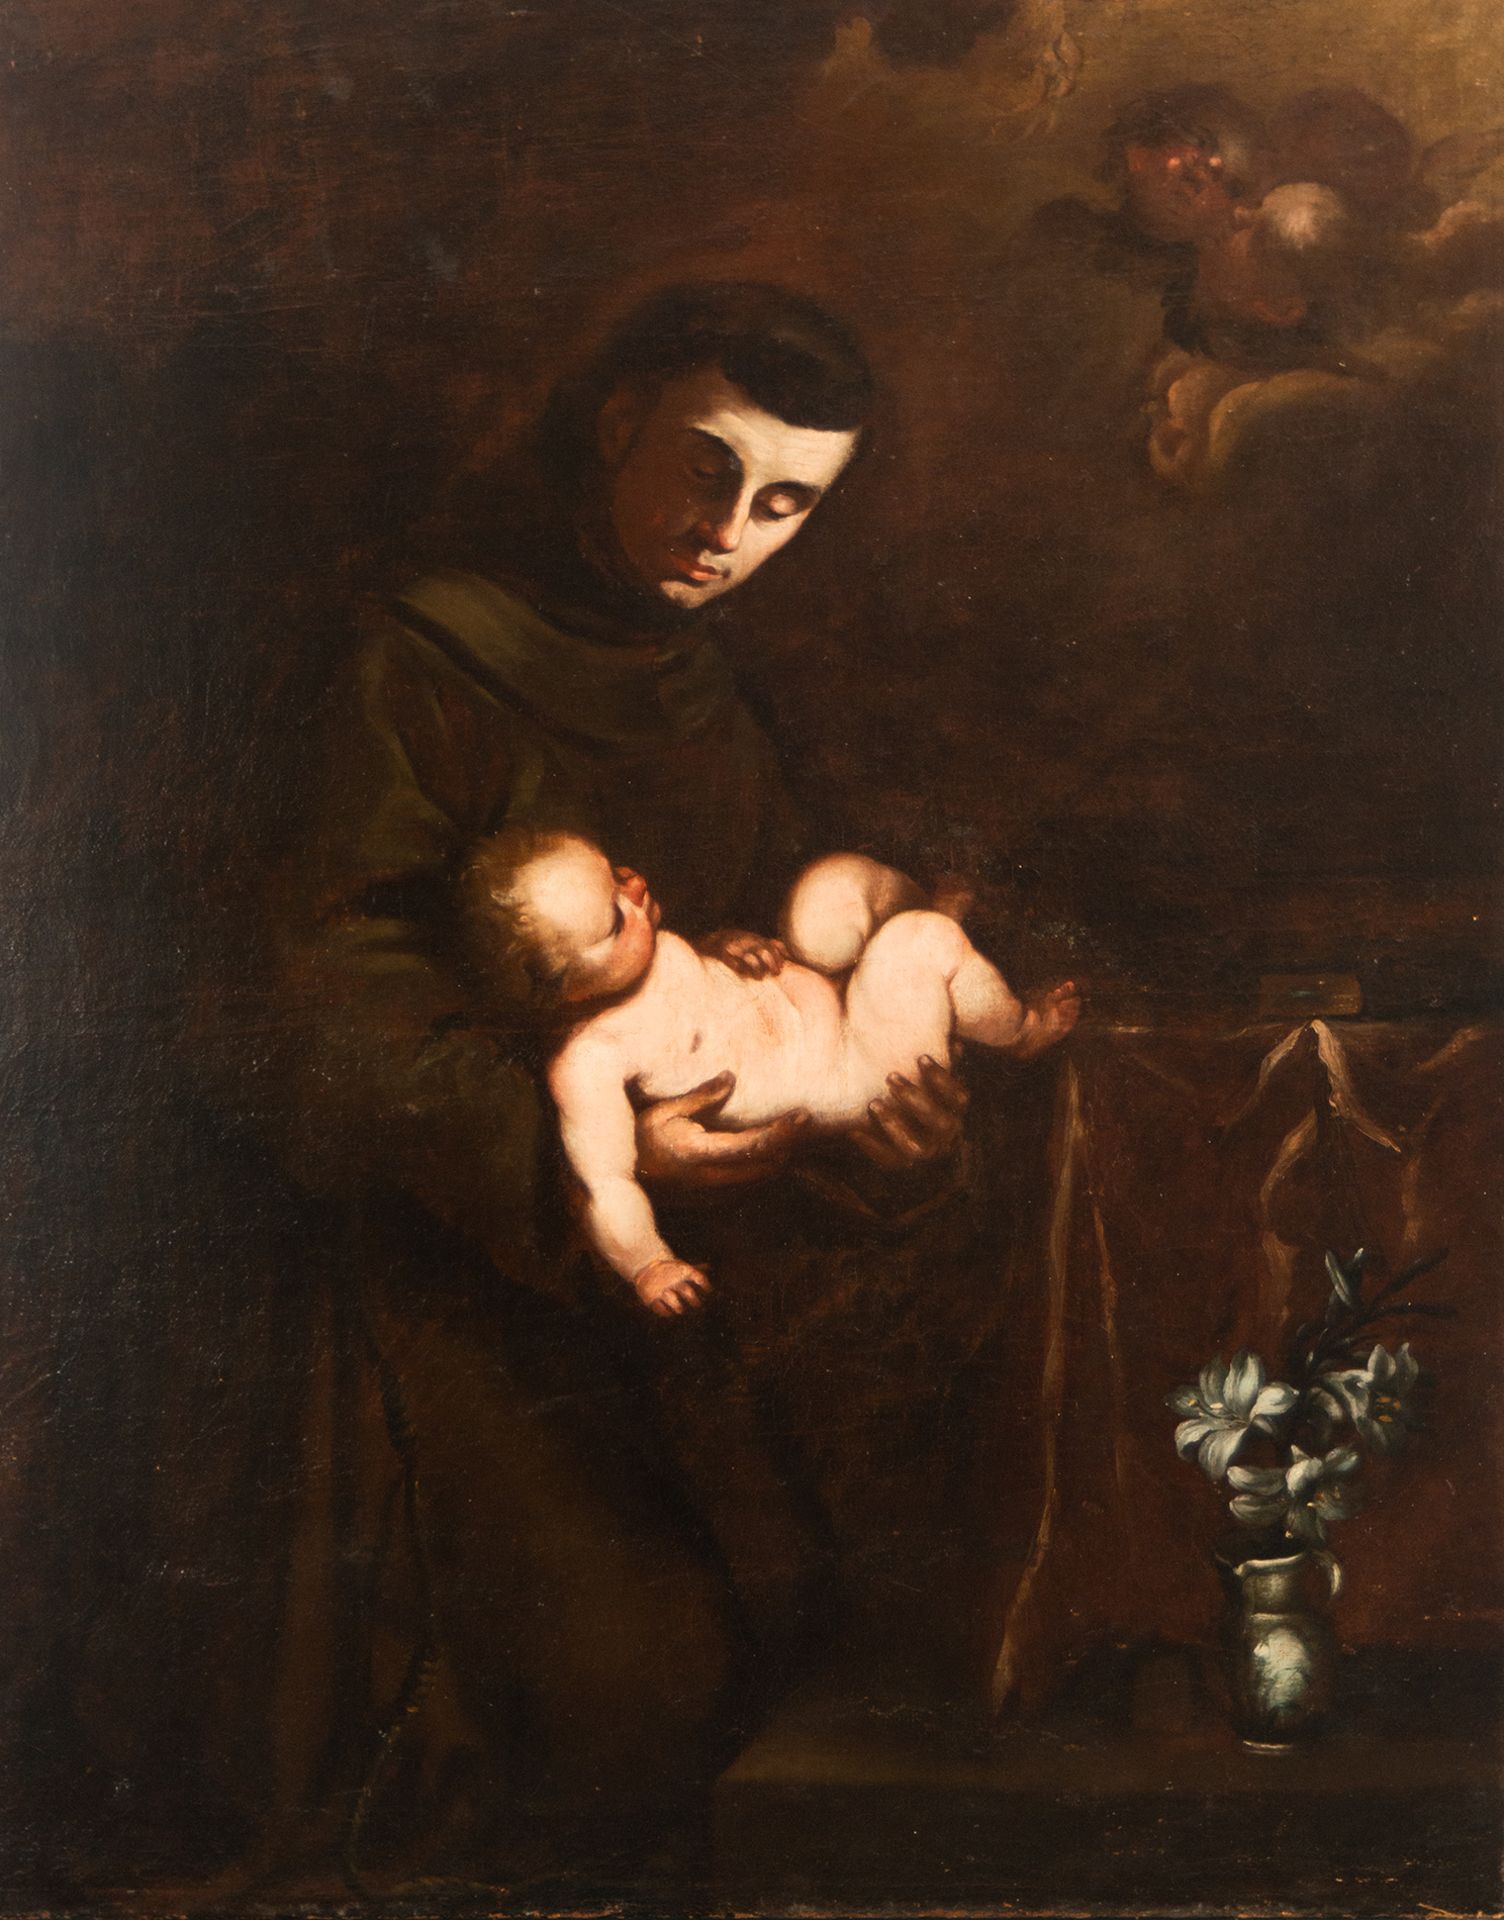 Saint Francis of Assisi with the Child Jesus, Juan de Sevilla y Escalante, 17th century Granada scho